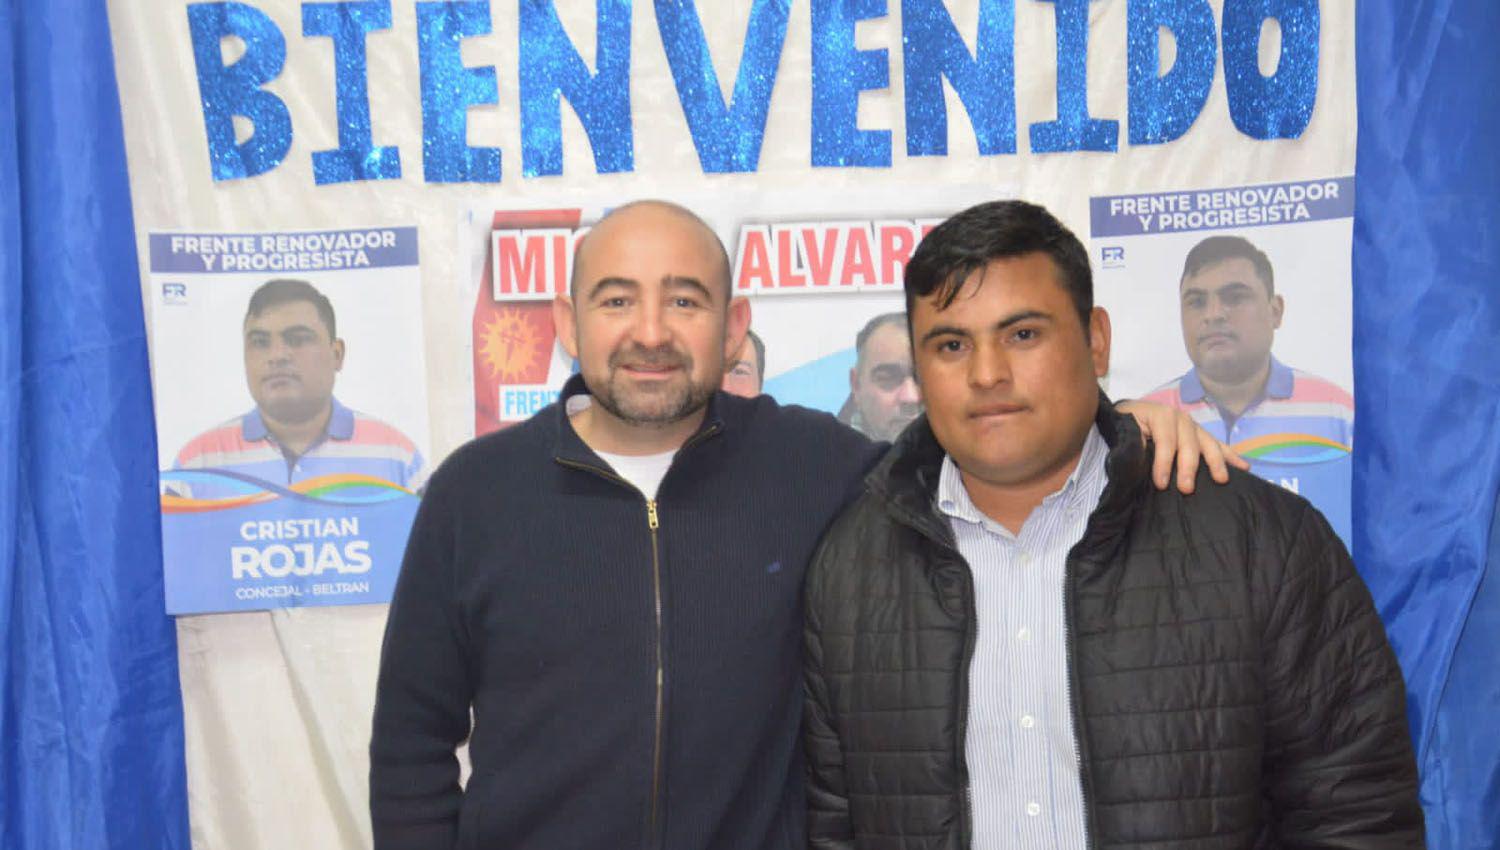 El Frente Renovador y Mirolo apoyan a Cristian Rojas concejal en Beltraacuten